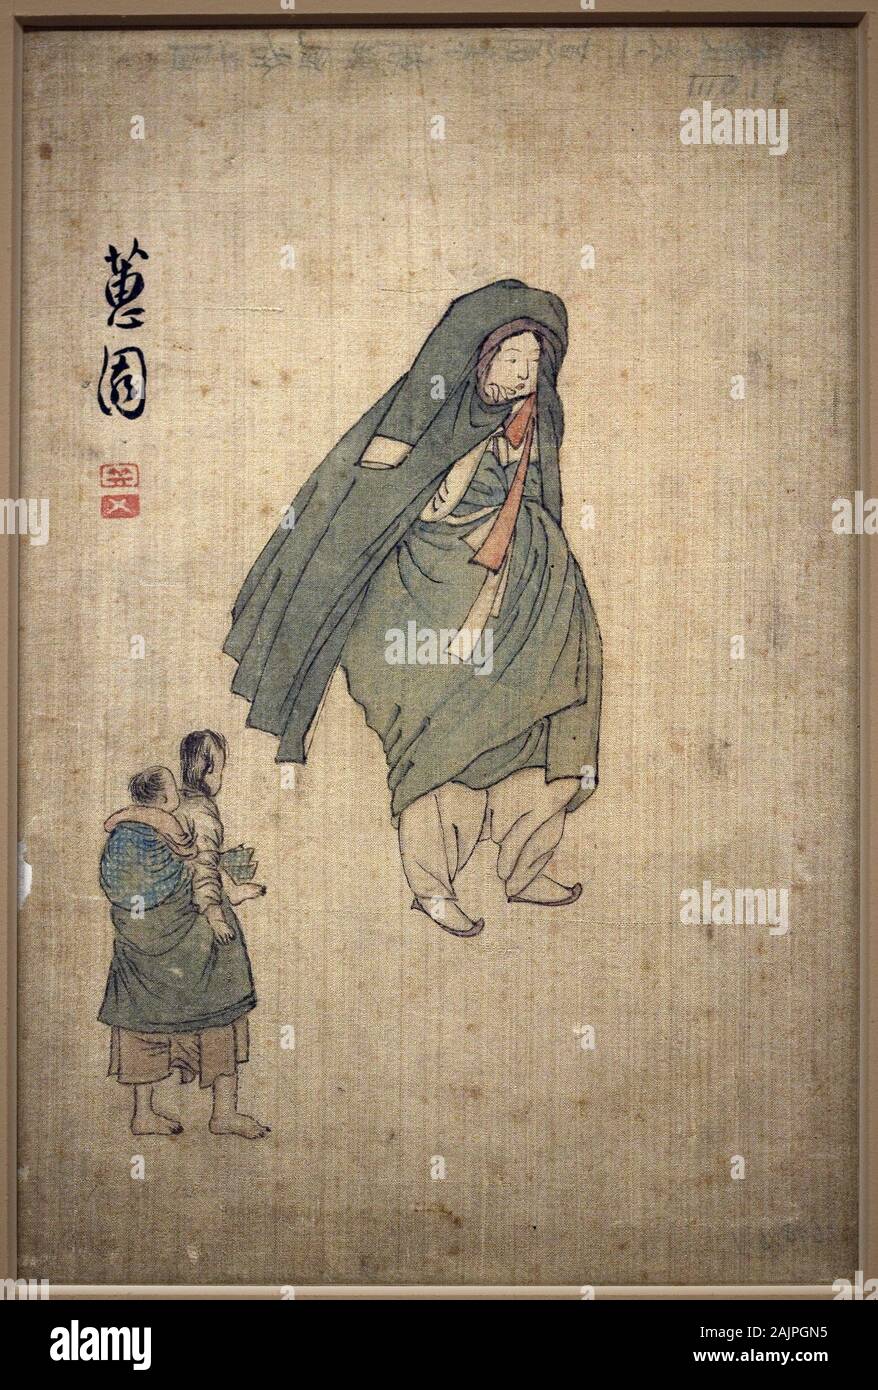 Femme emmitouflee dans son manteau, passant a cote de deux enfants. Peinture de Shin Yunbok (vers 1758-1813), encre sur papier, 18e siecle, art coreen Stock Photo